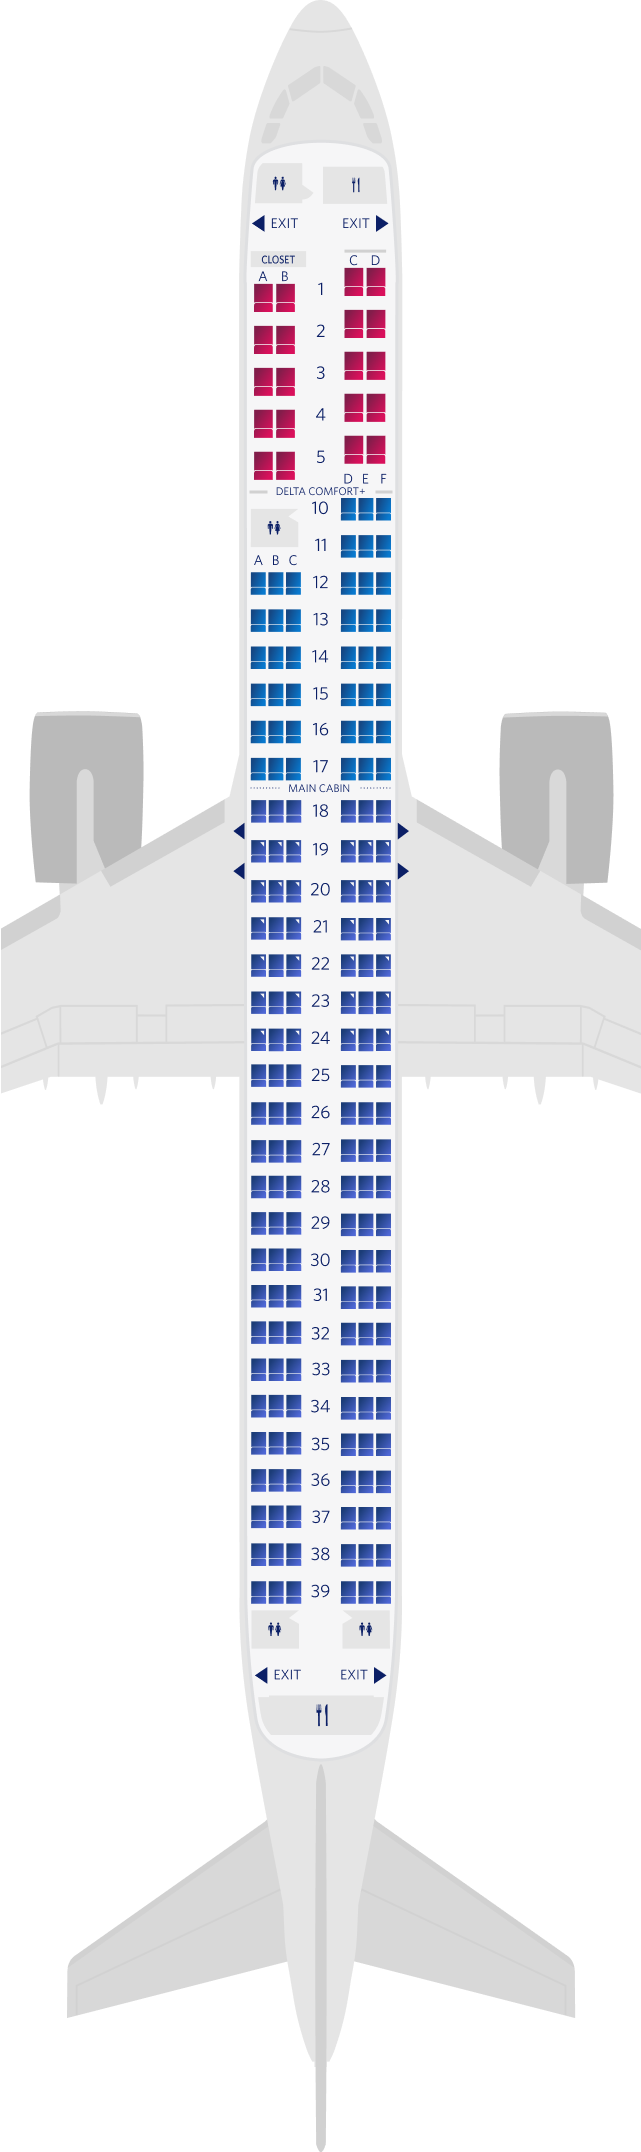 空中巴士A321neo三客艙座位圖